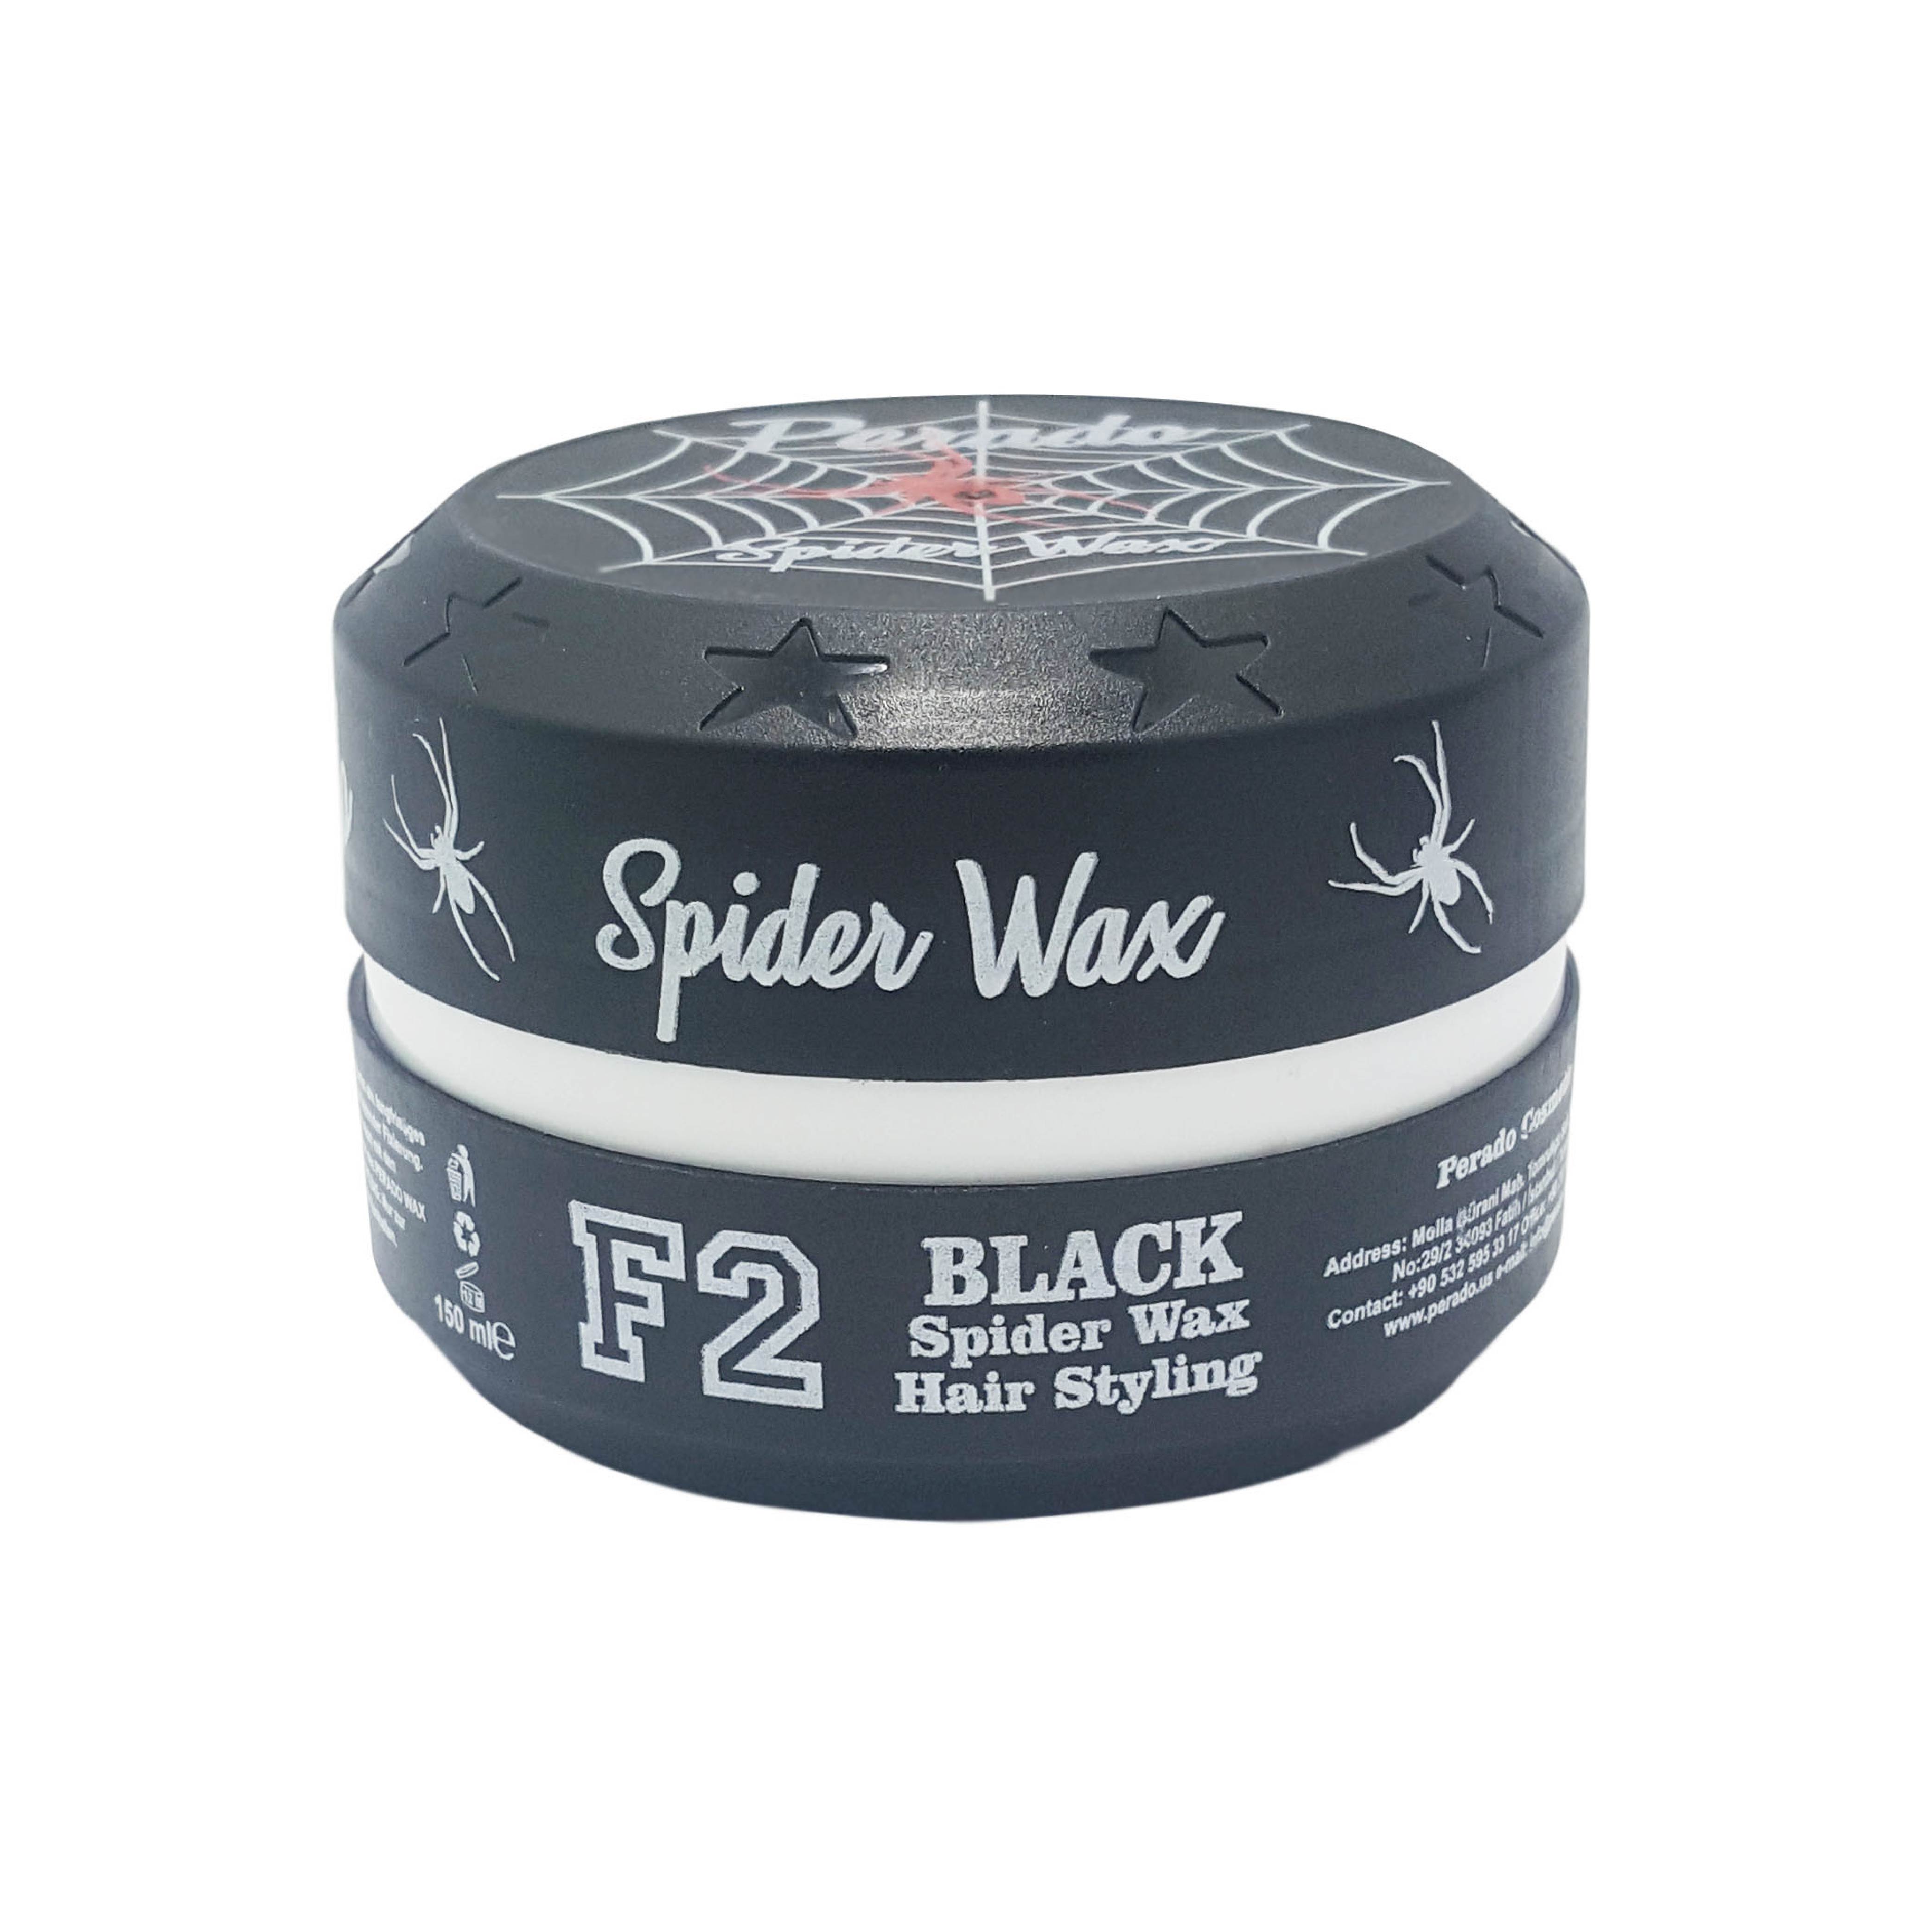 Spider web hair wax in India L'oréal Tecni Art Web Hair Wax